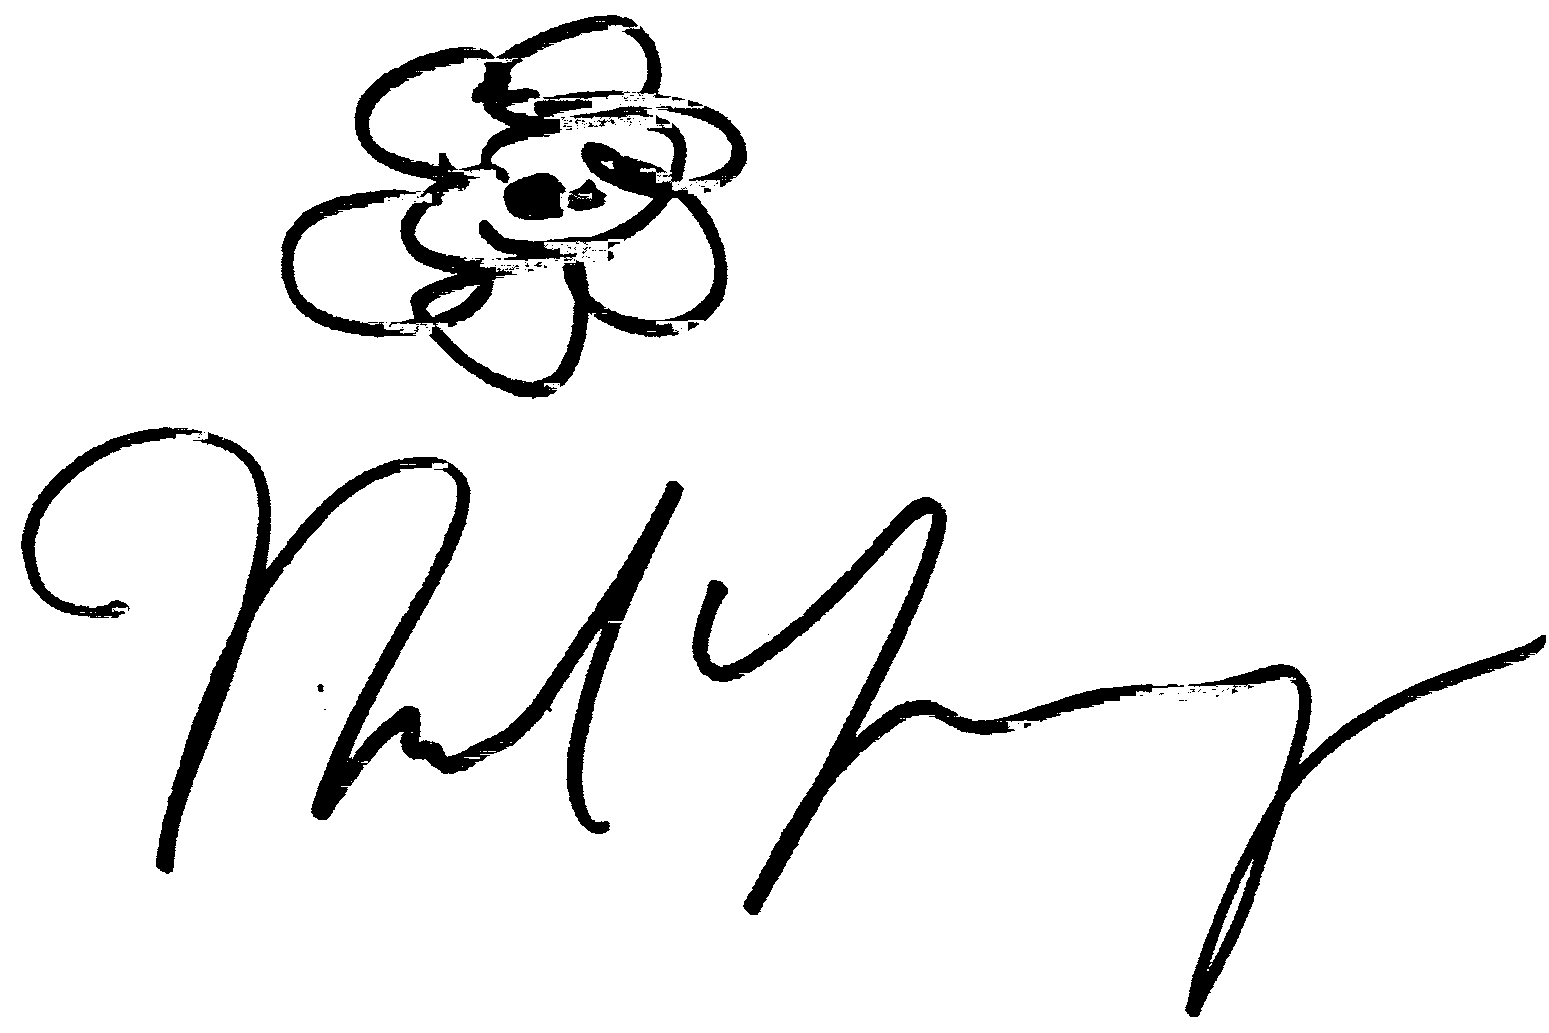 Neil Young autograph facsimile